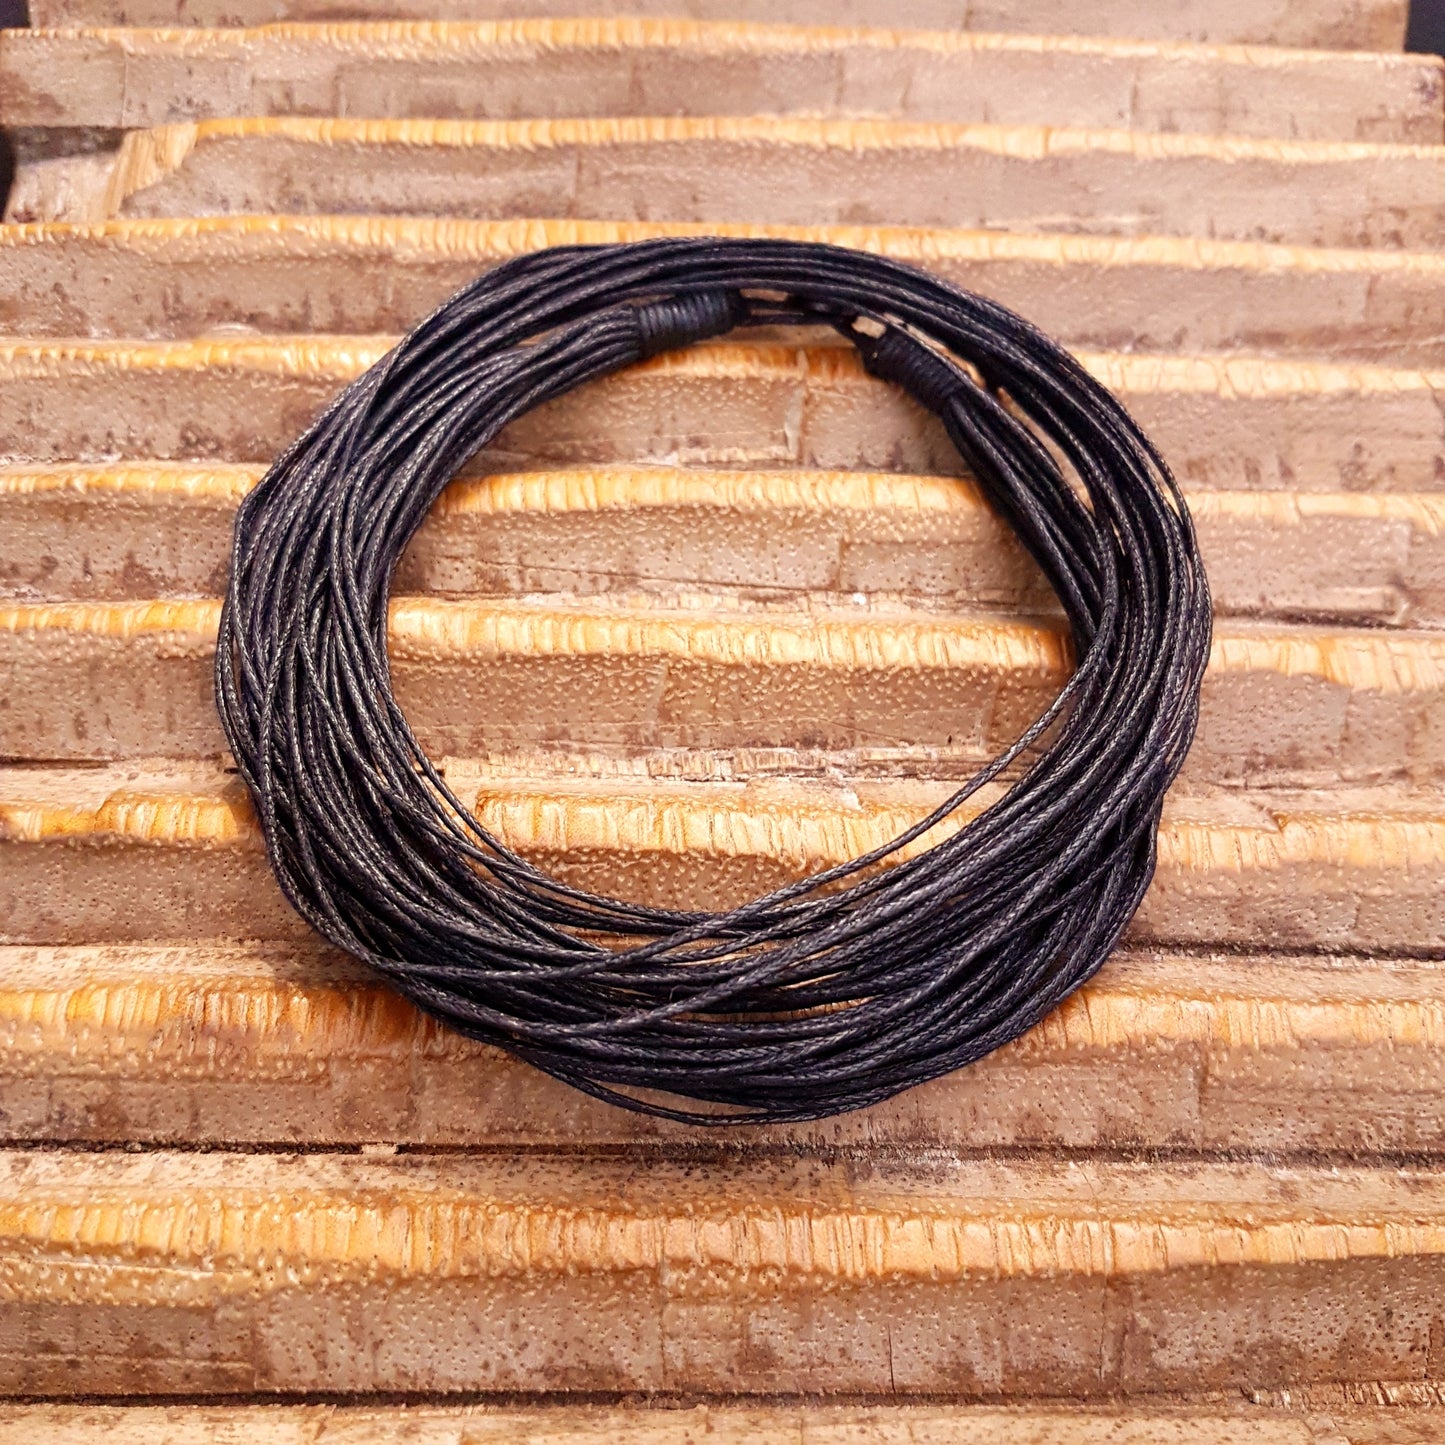 Schwarze mehrreihige Baumwollkette mit Knopf-Verschluss.  Länge: 60 cm 20-reihig